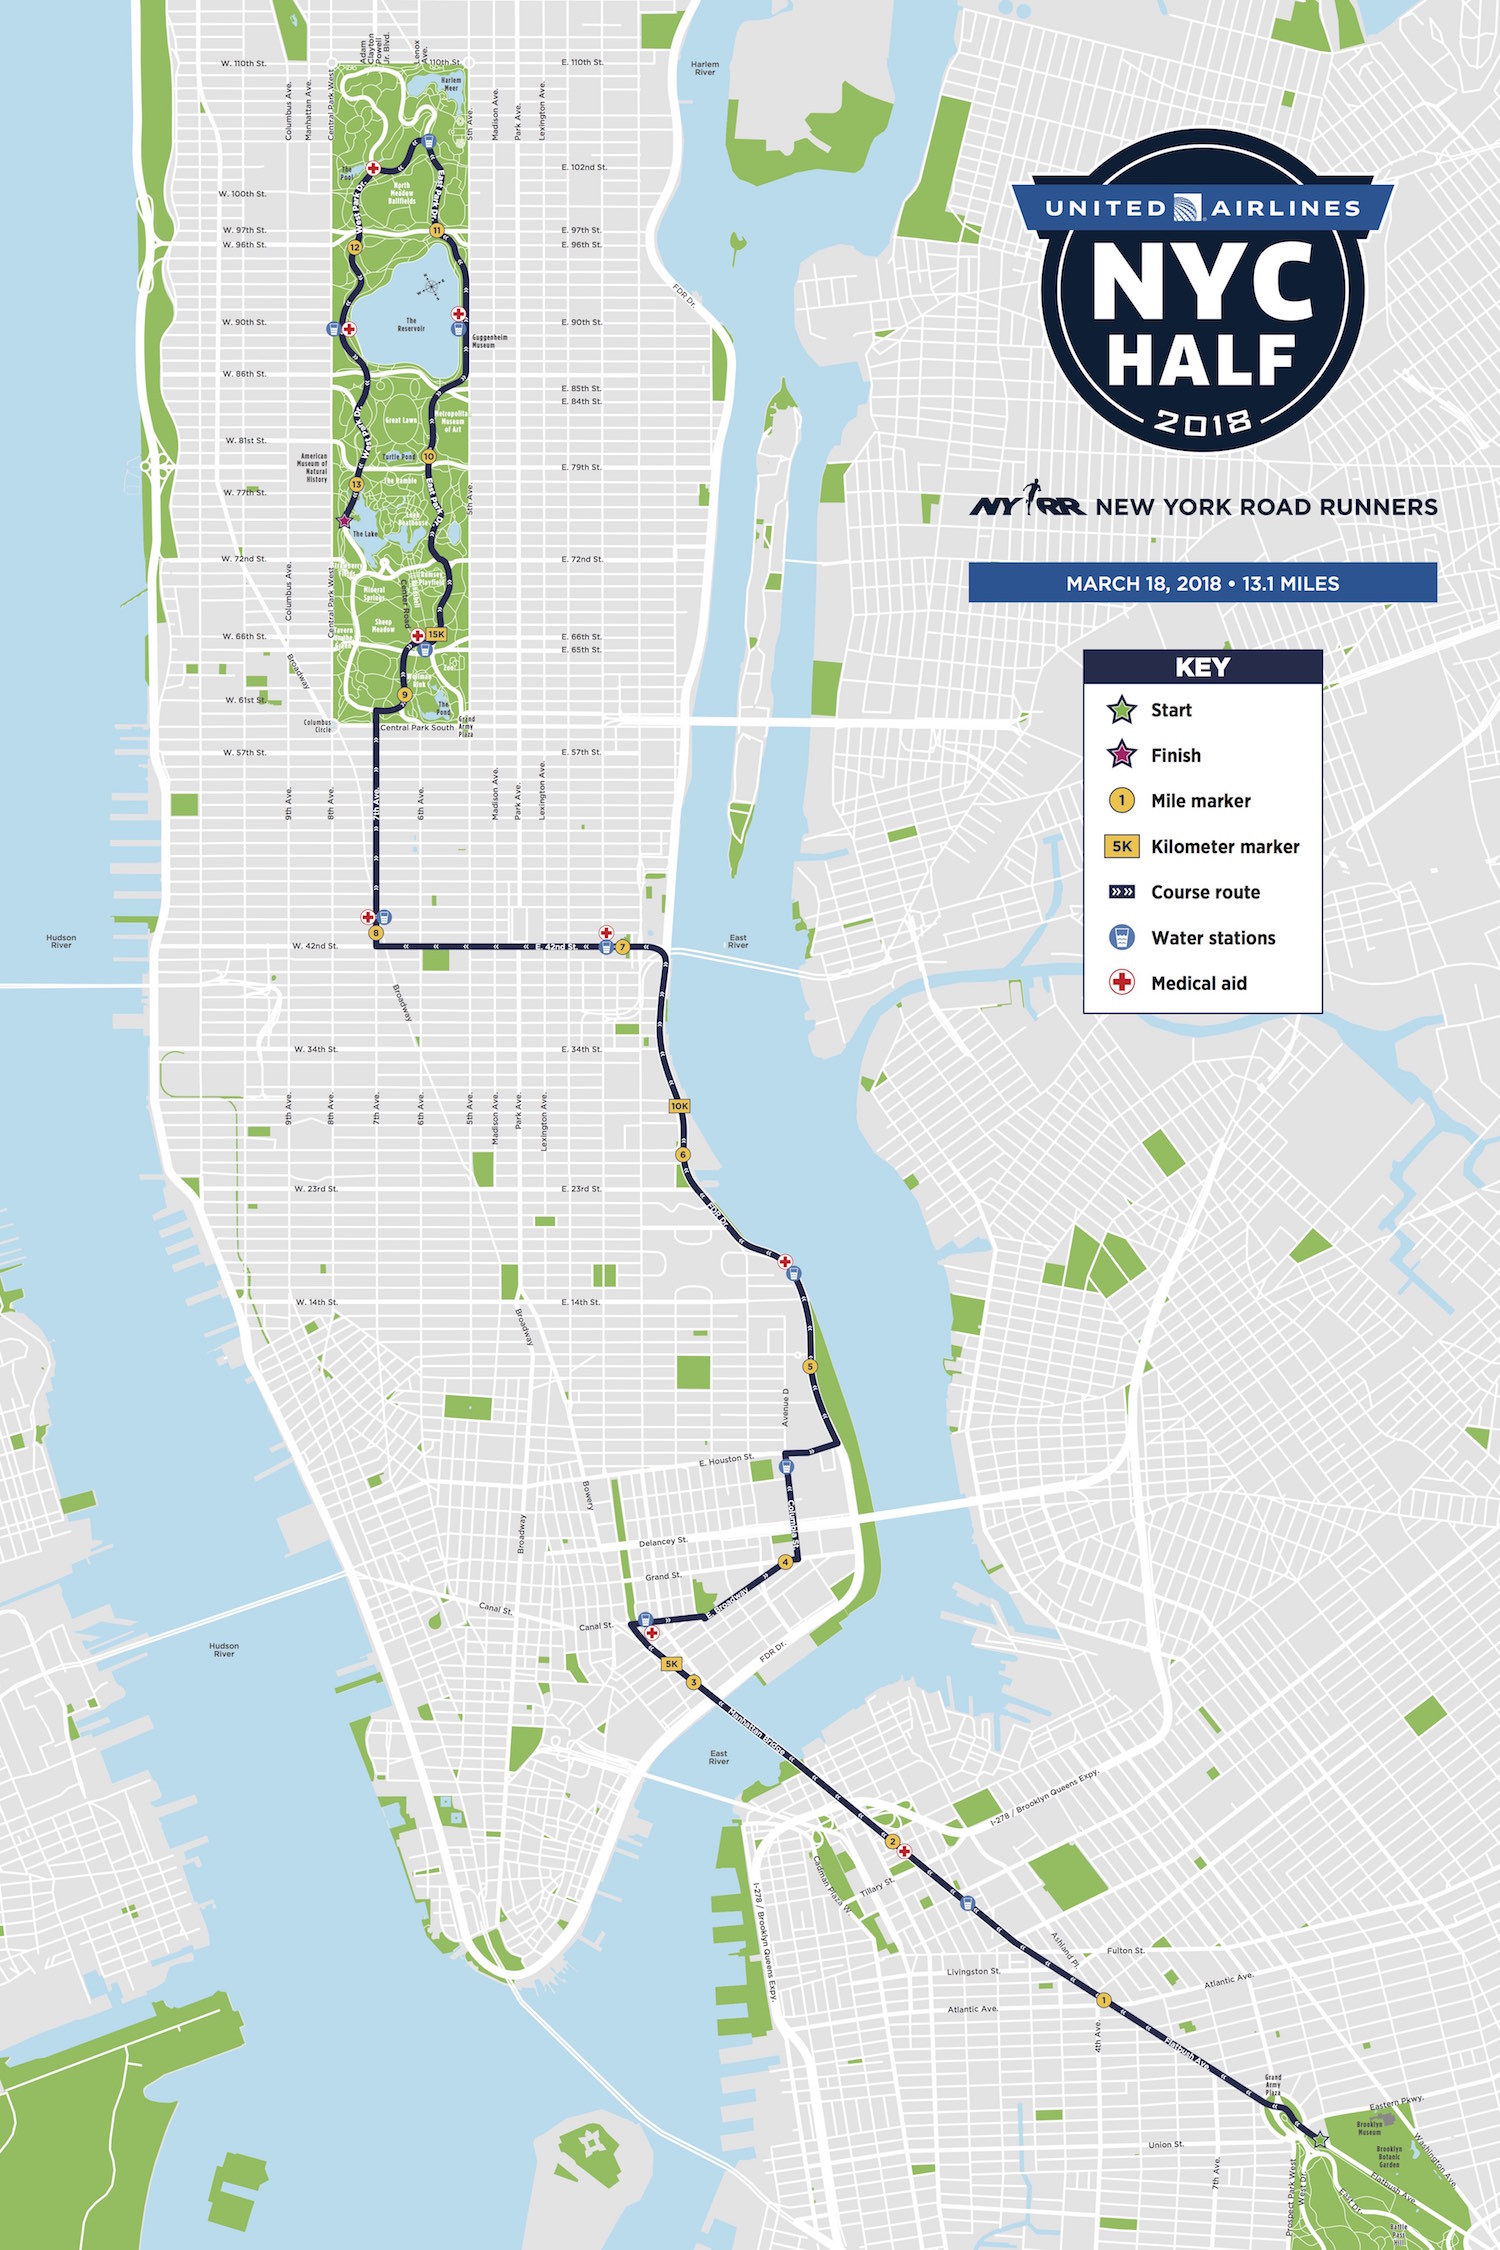 Tribeca Citizen NYC Half Marathon to Bypass Lower Manhattan